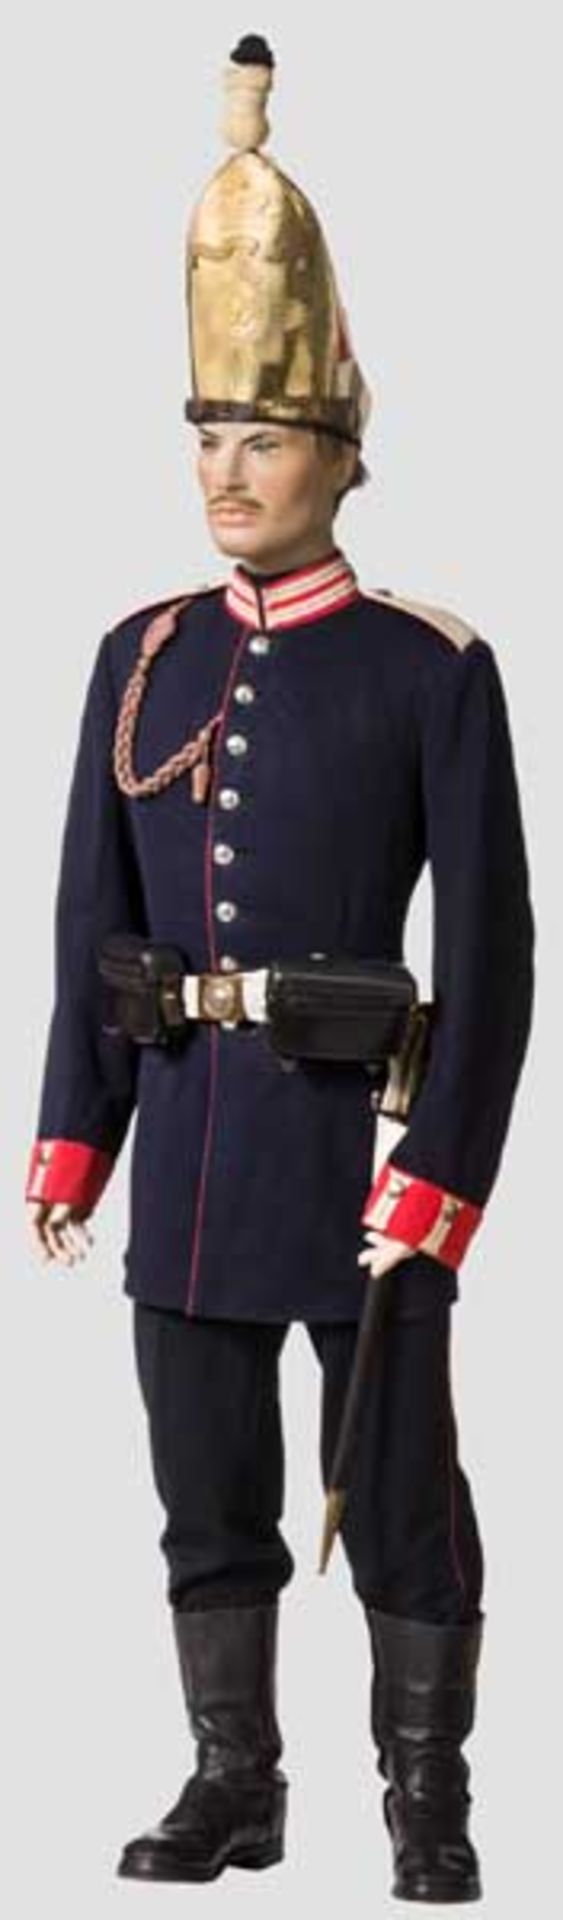 Uniformfigur eines Gefreiten des 1. Garde-Regiments zu Fuß, um 1890 Originale Grenadiermütze mit